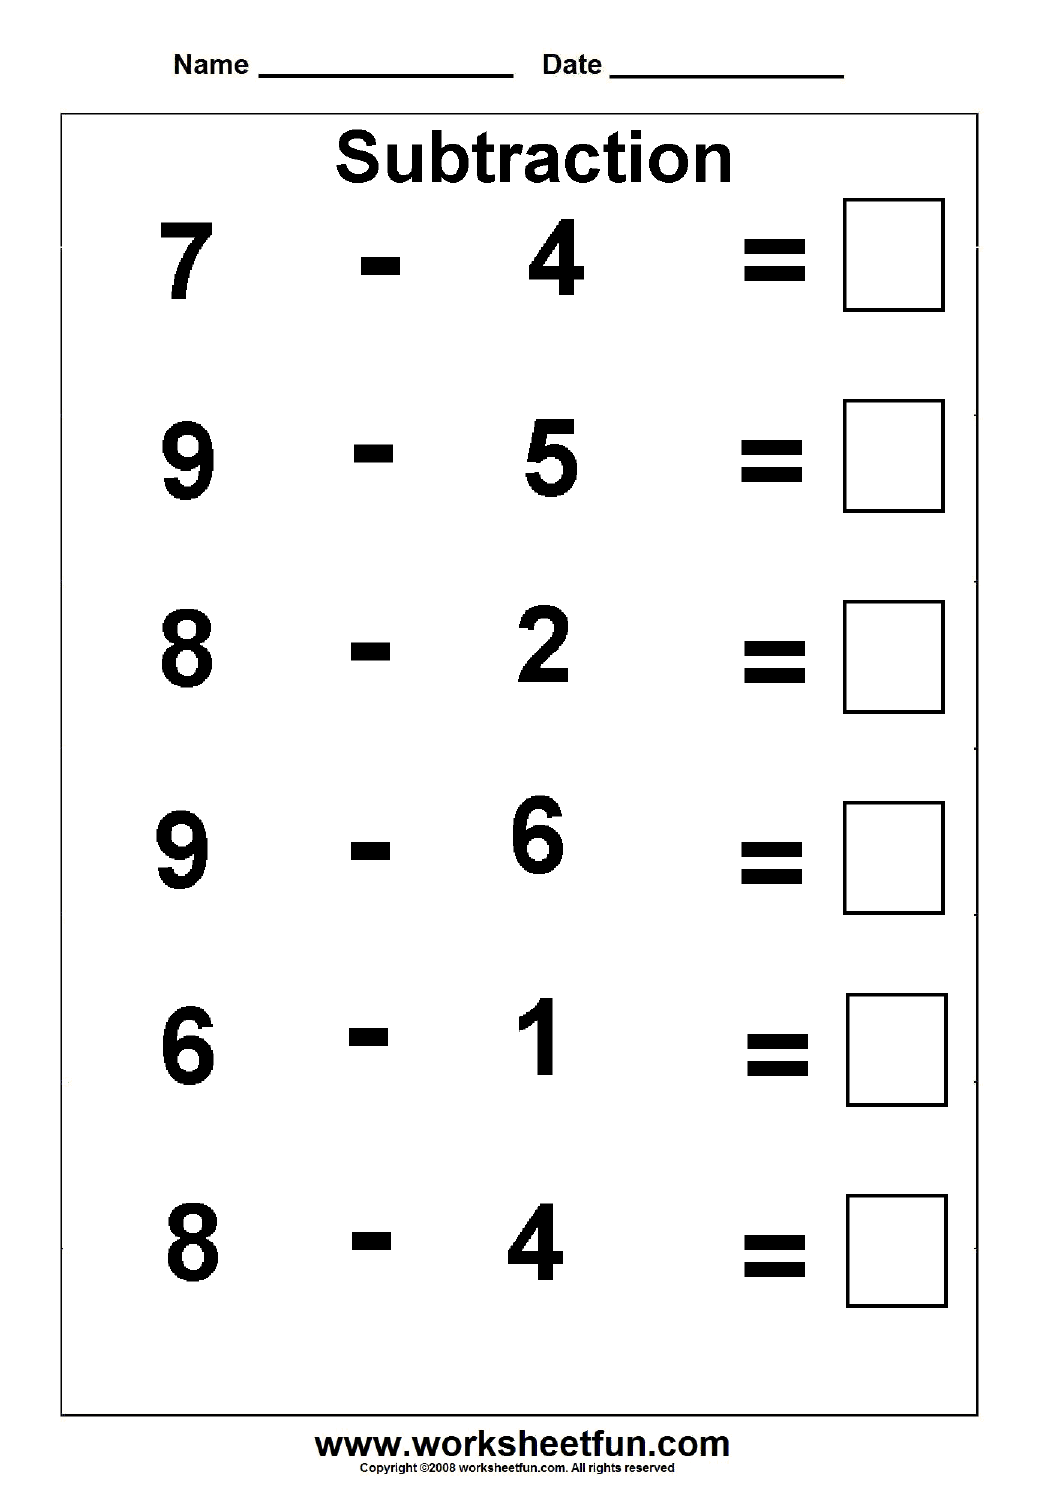 15-subtraction-word-problem-worksheets-grade-1-worksheeto